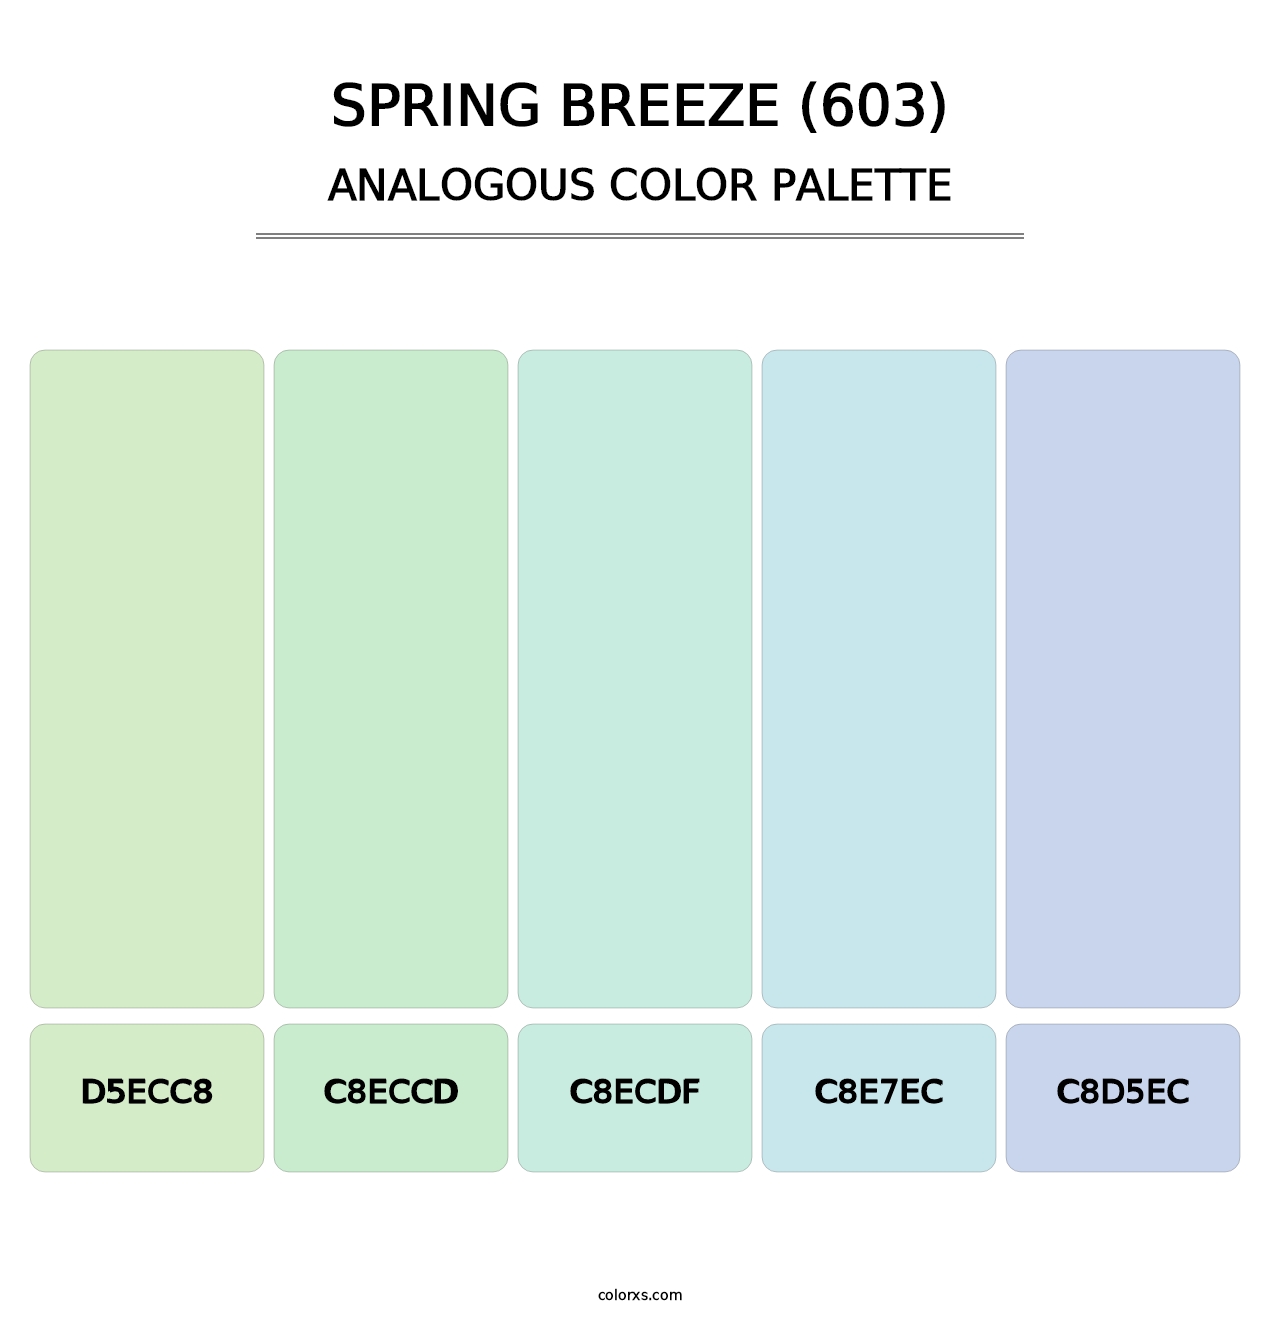 Spring Breeze (603) - Analogous Color Palette